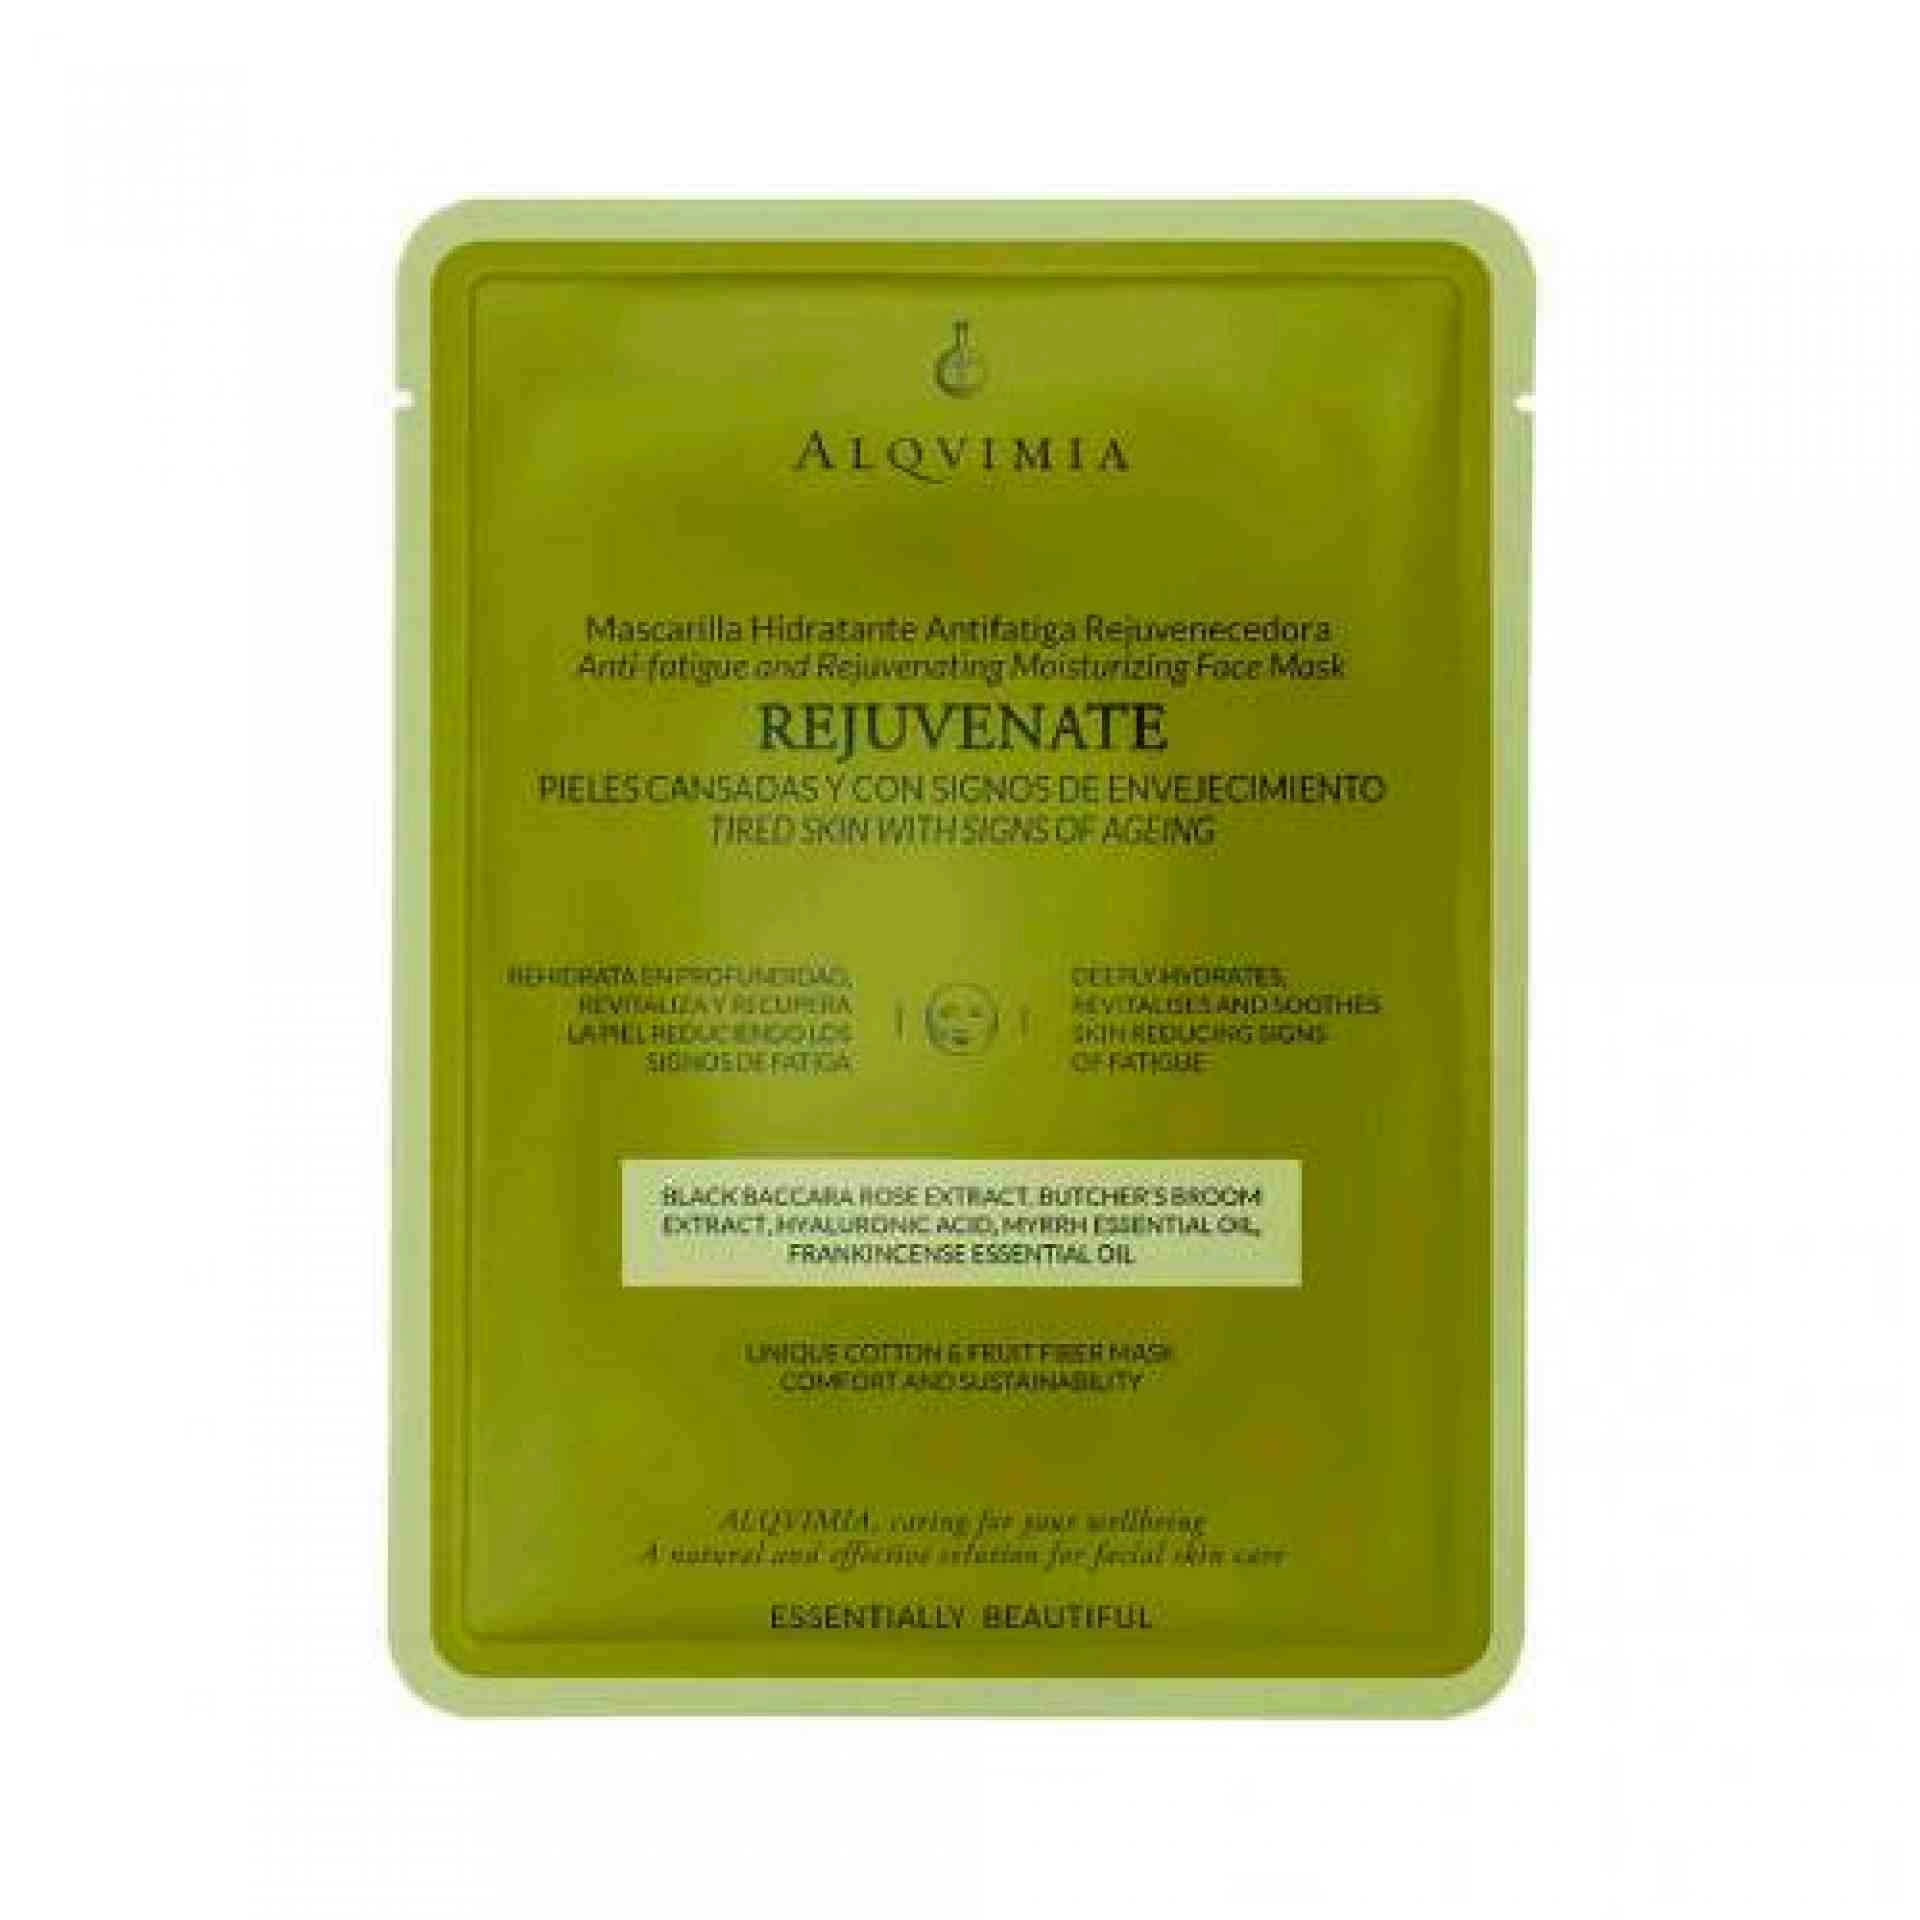 Rejuvenate | Mascarilla hidratante rejuvenecedora 1ud - Essentially Beautiful - Alqvimia ®